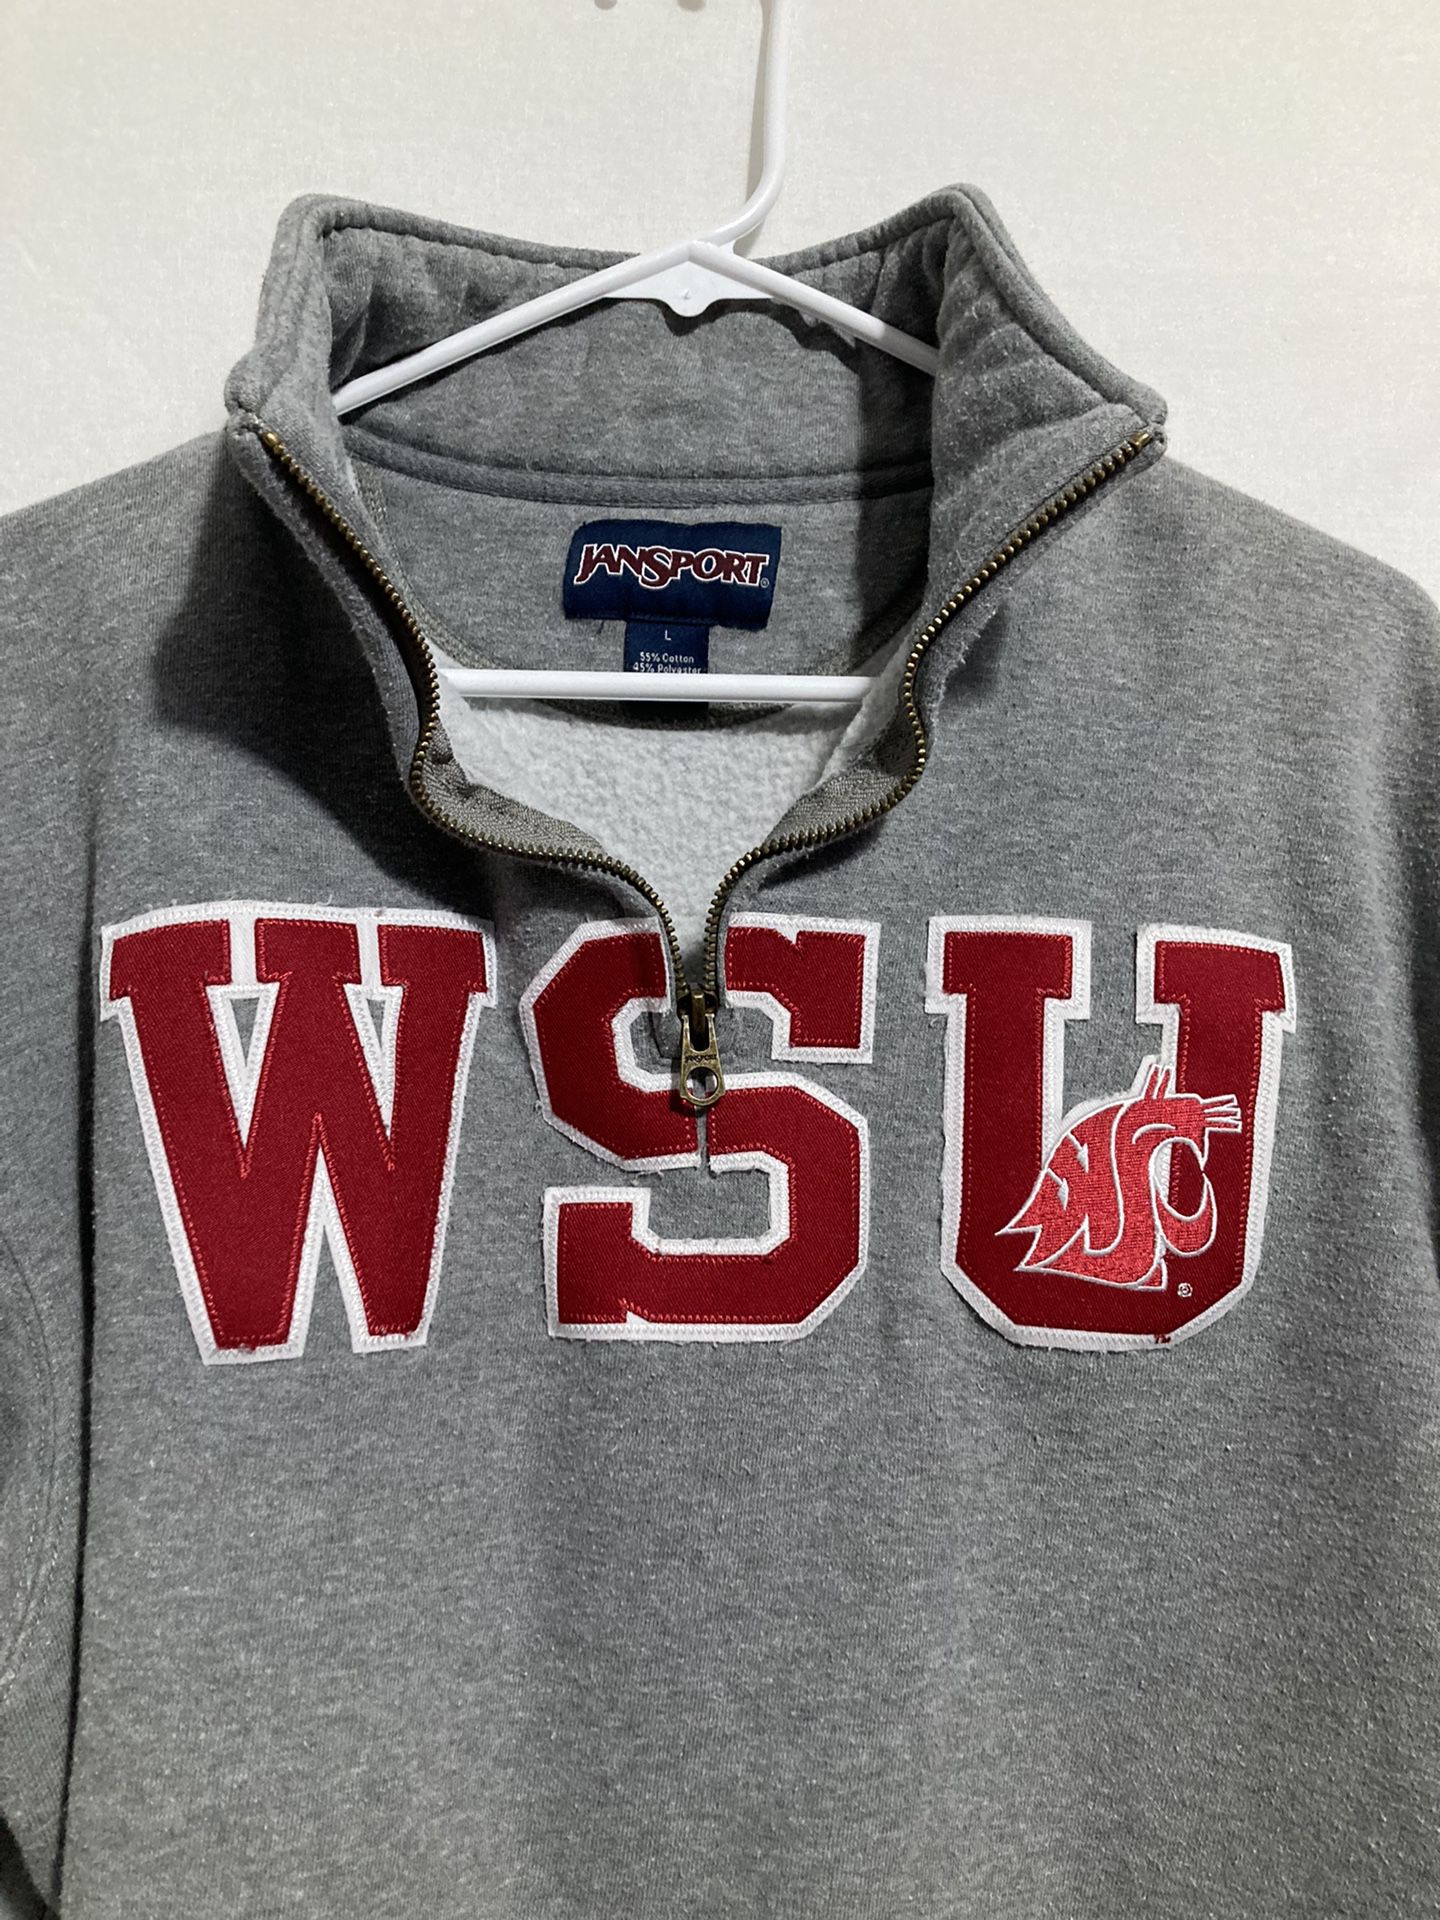 Vintage* JANSPORT Washington University Embroidery WSU Cougars Sweater LARGE